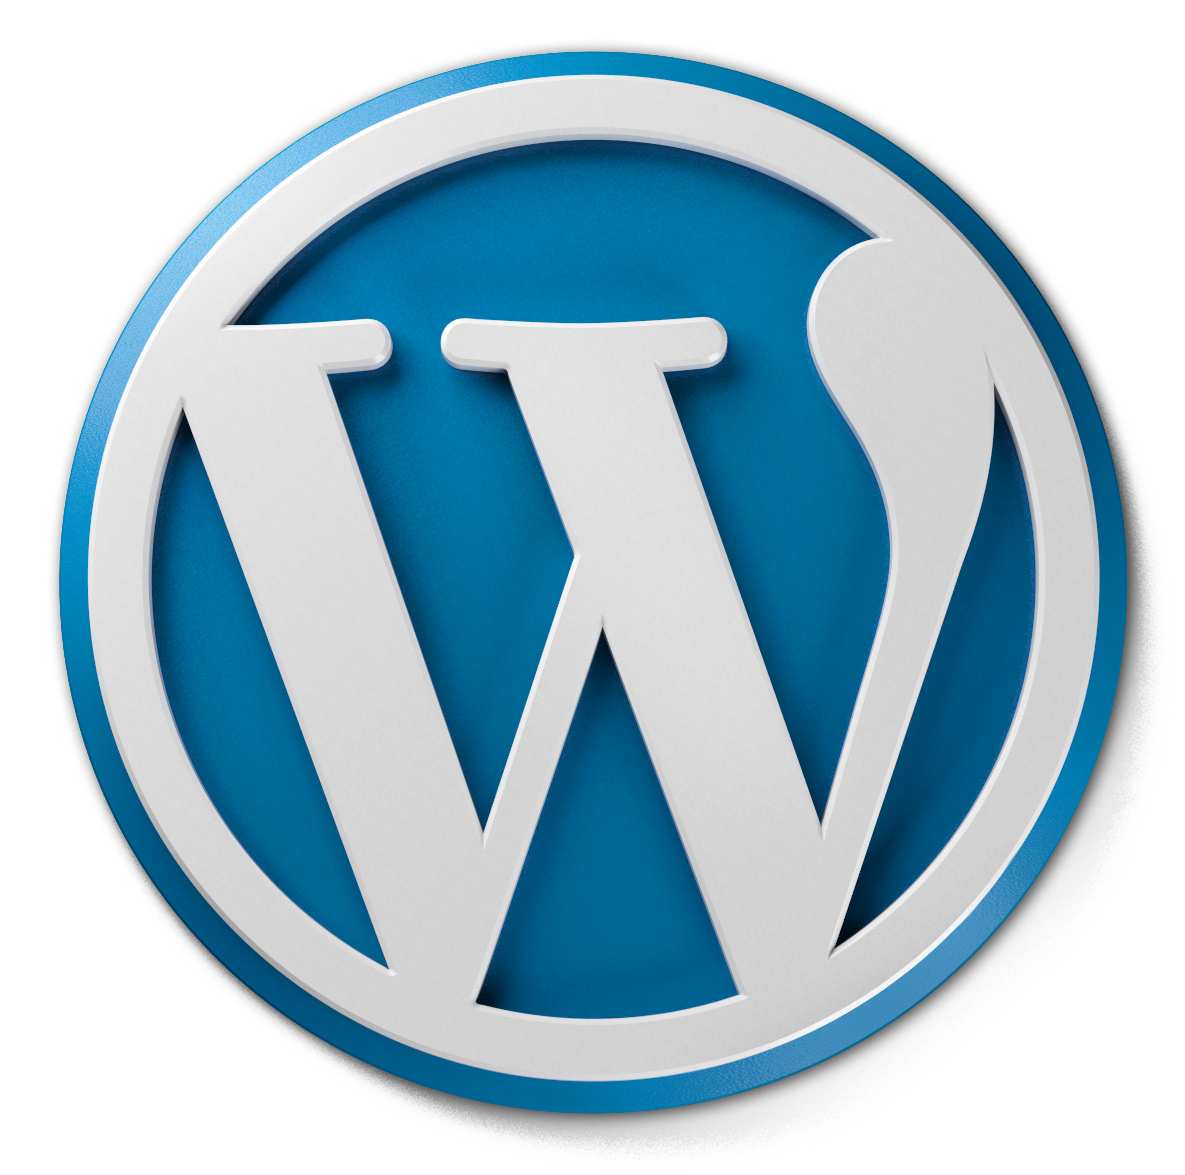 Get the best SEO guidance for Wordpress blogs as a beginner